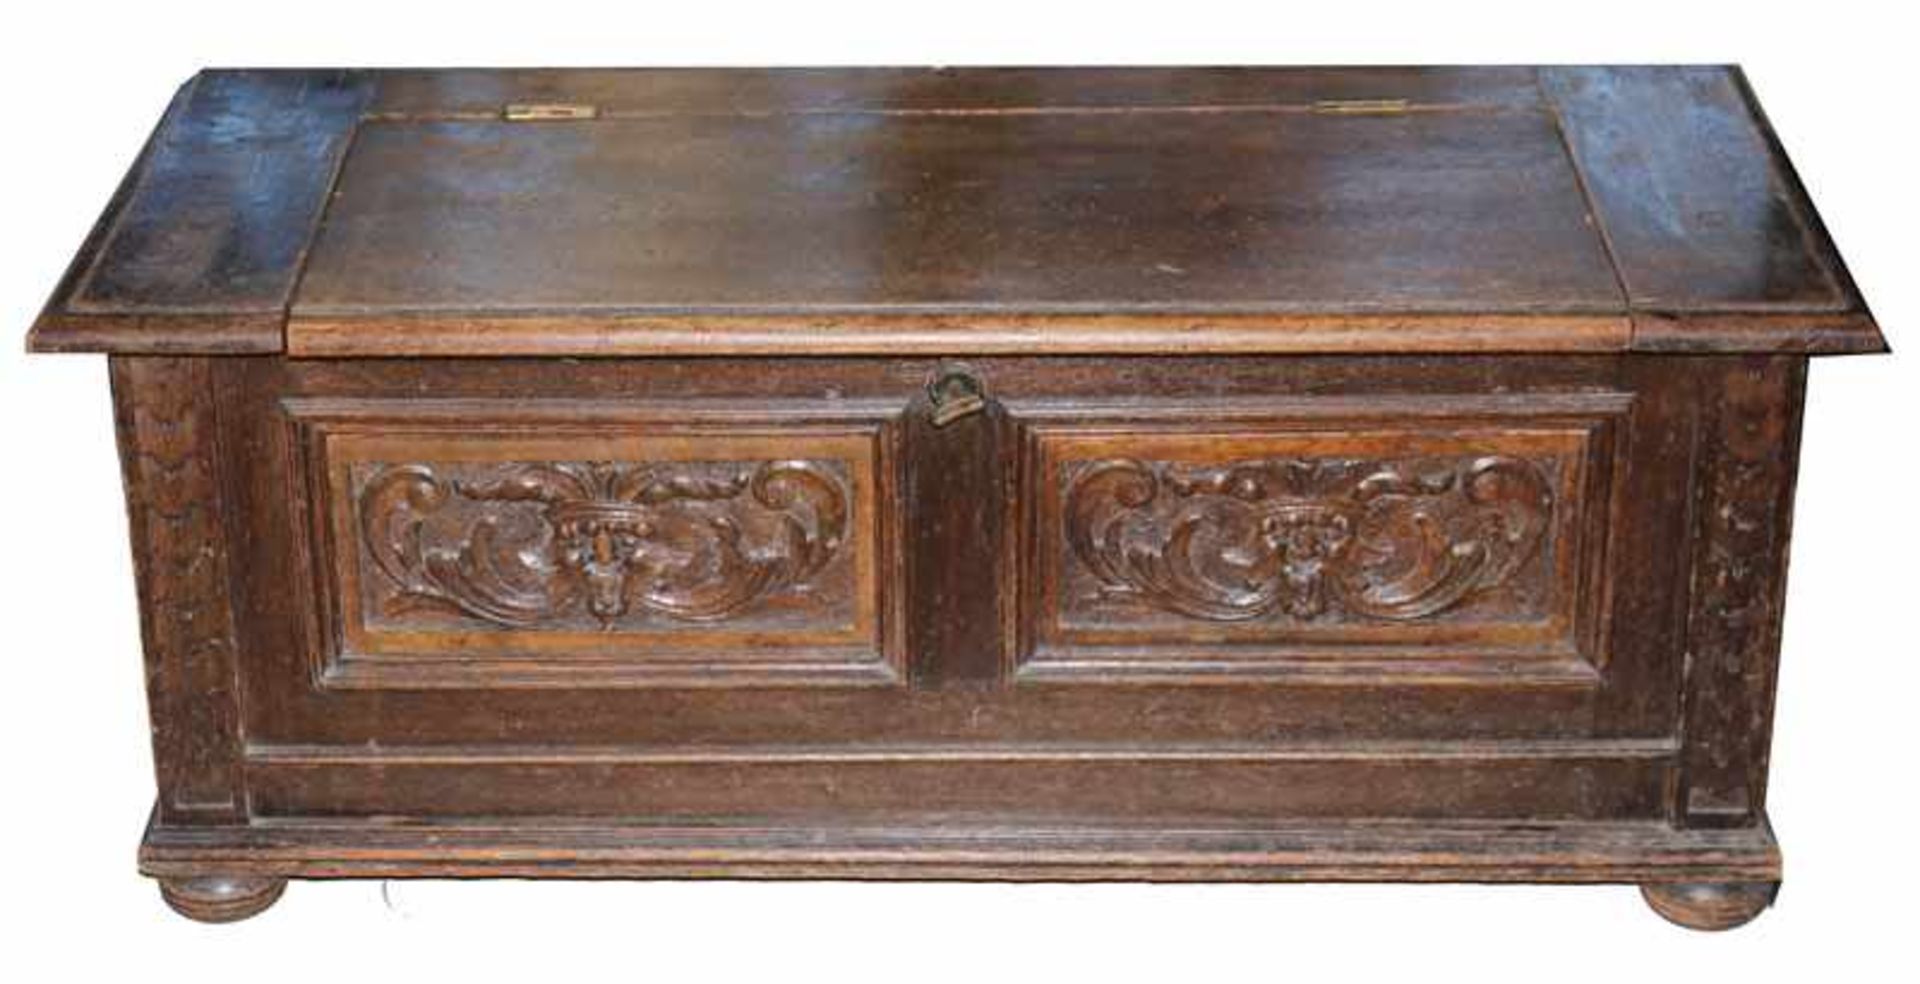 Sitztruhe, Korpus aufklappbar, schauseitig mit Kassettendekor, beschnitzt, 19. Jahrhundert, H 45 cm,